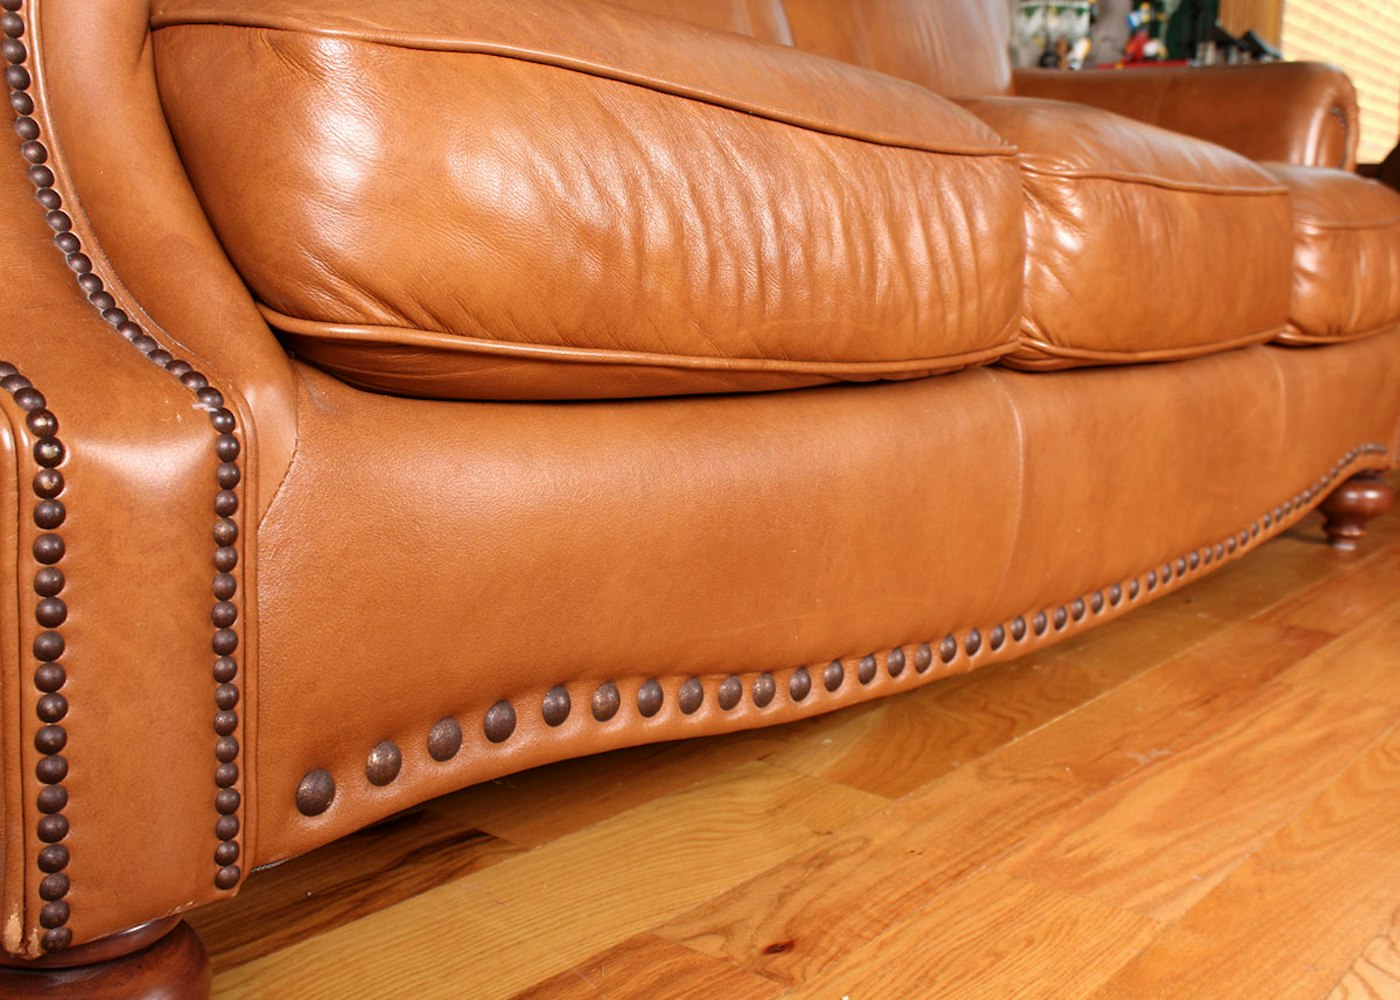 leather sofa protector plush